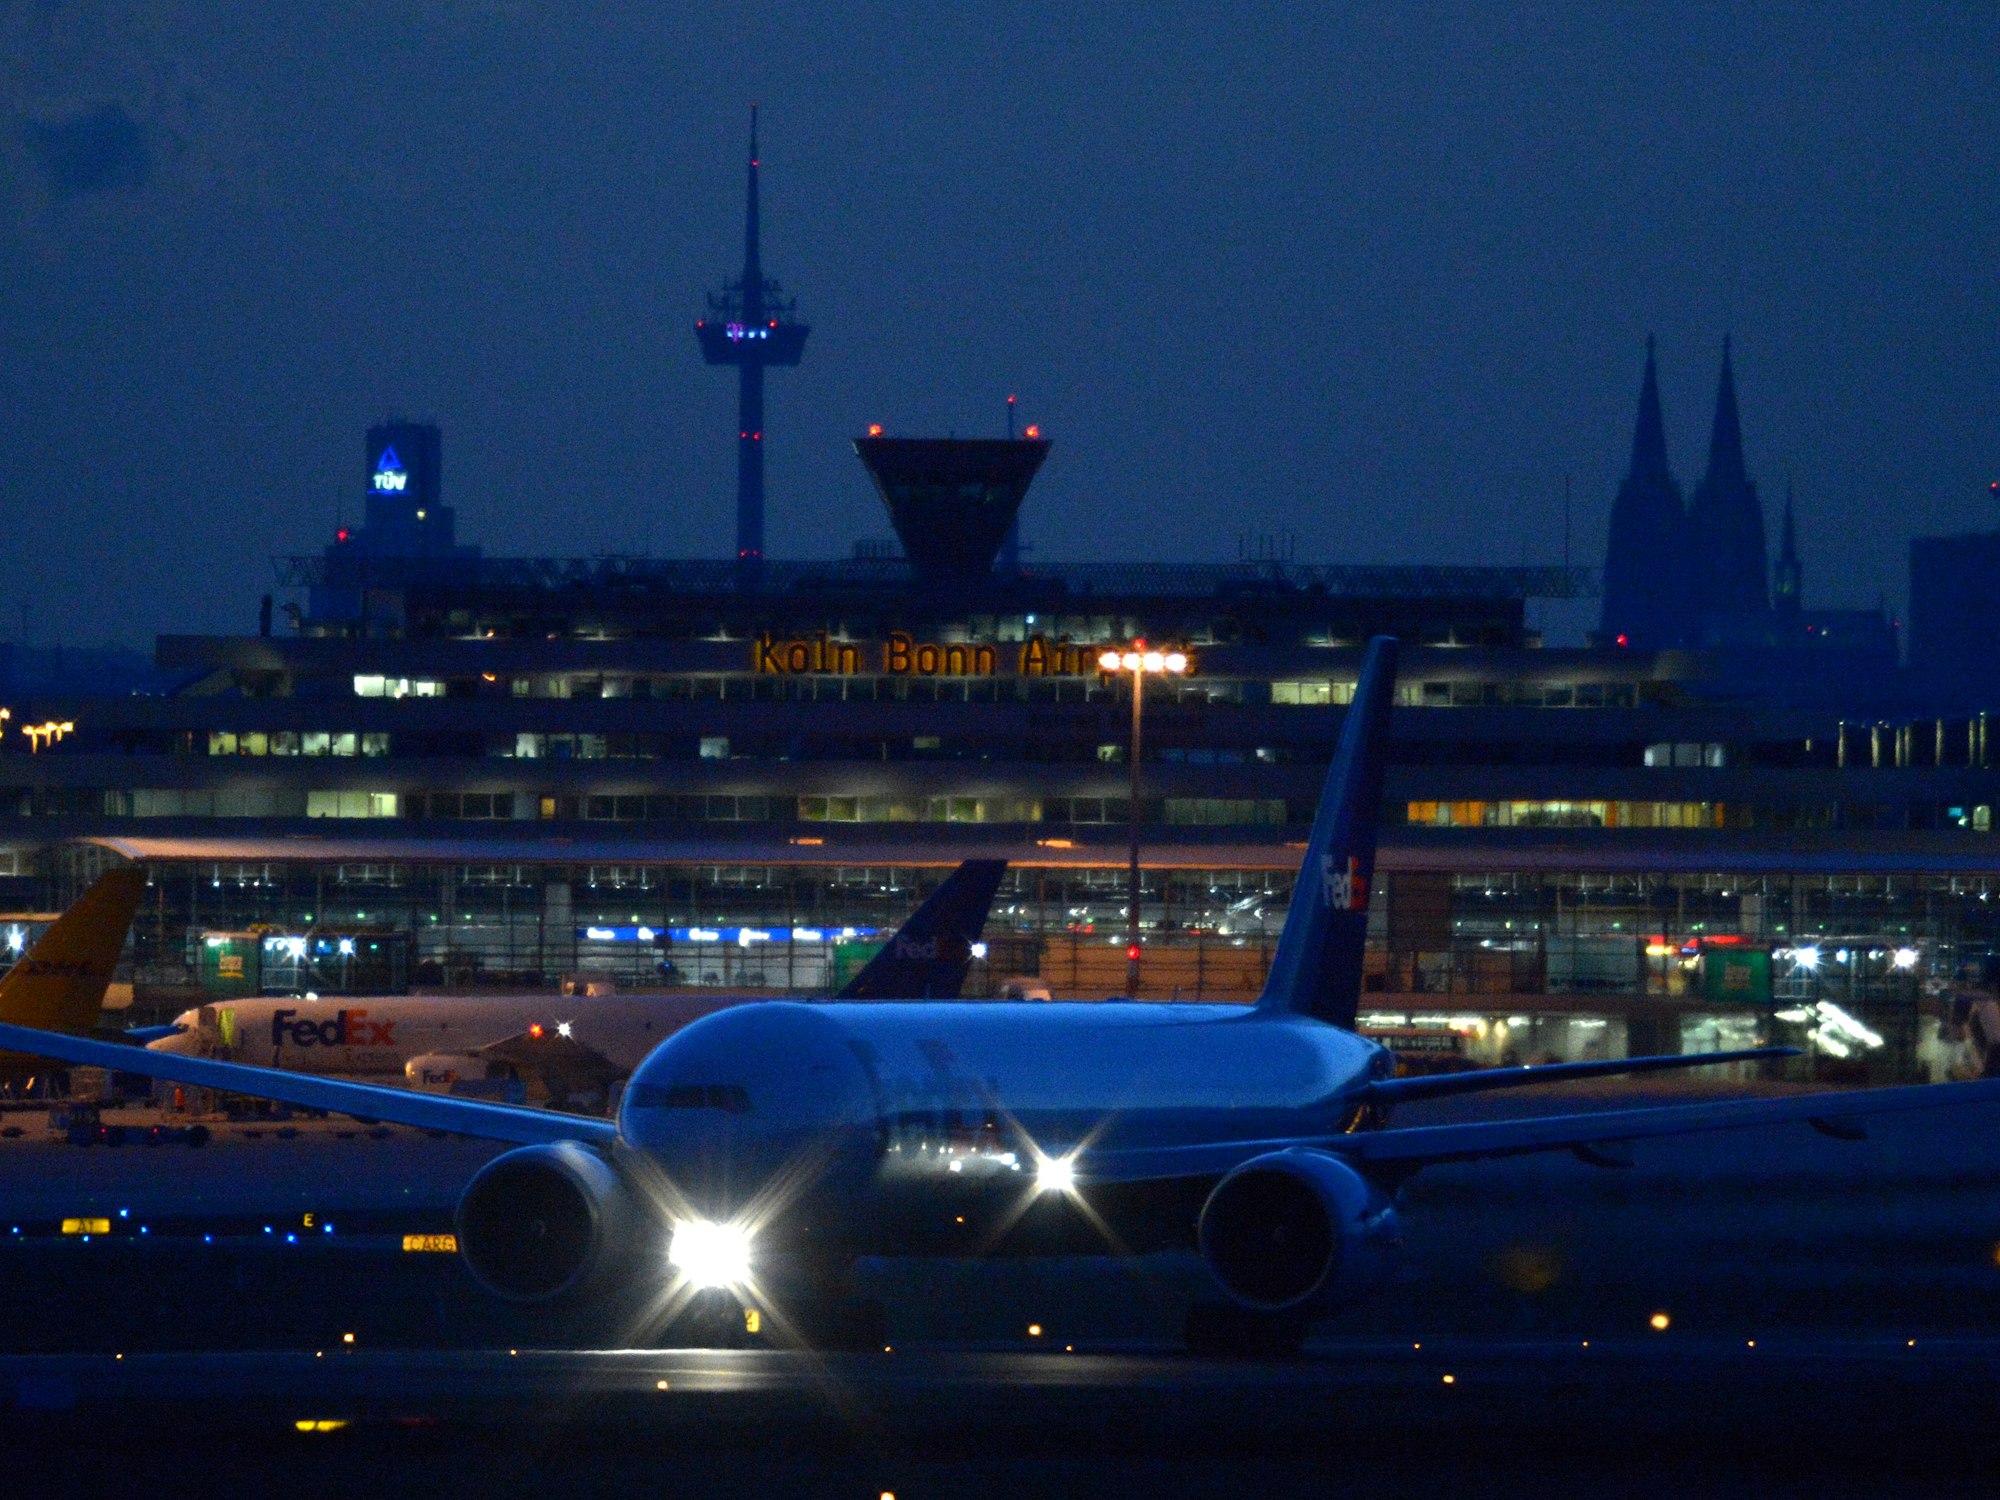 Ein Flugzeug startet am Donnerstag auf dem Flughafen Köln/Bonn.